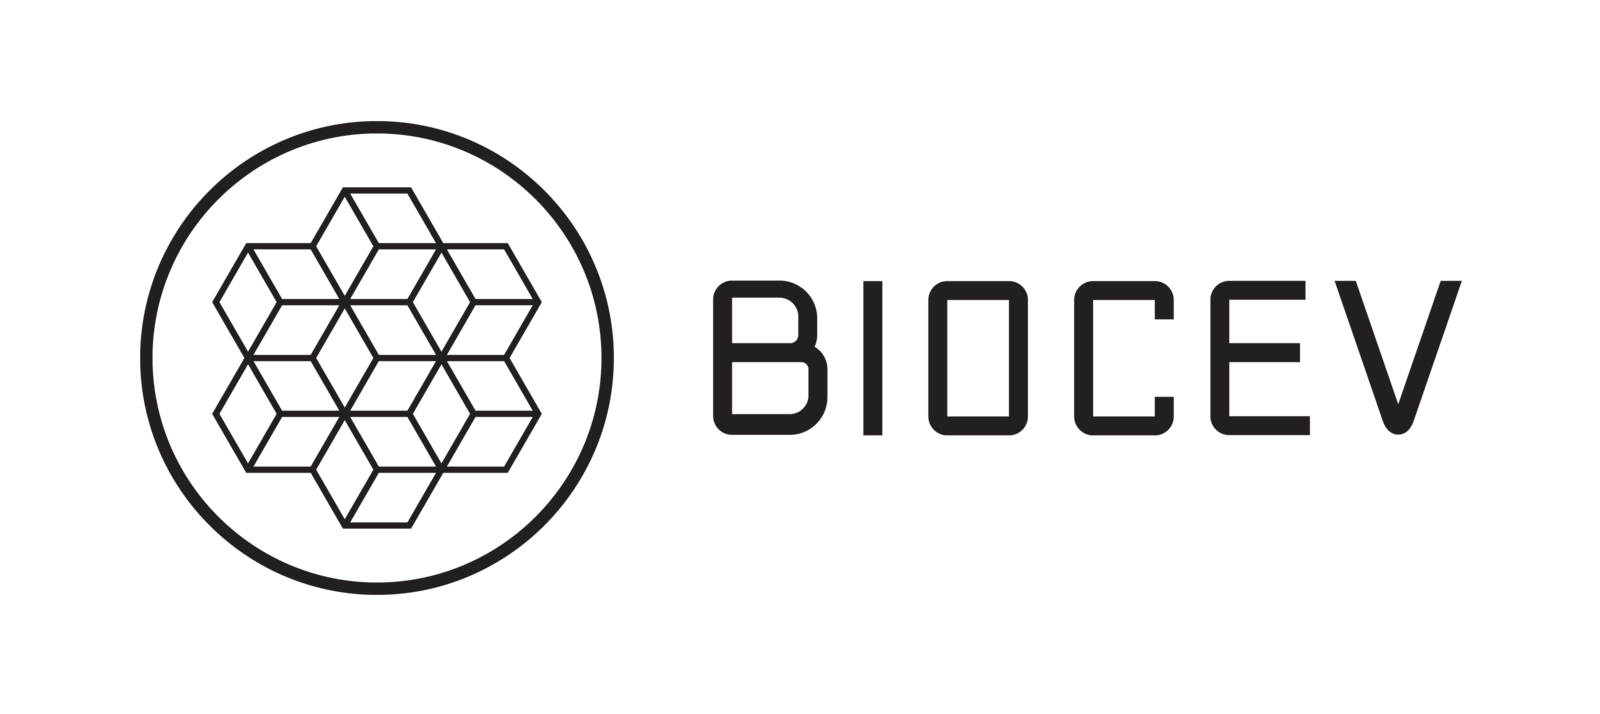 biocev-logo-black-horizontal.png